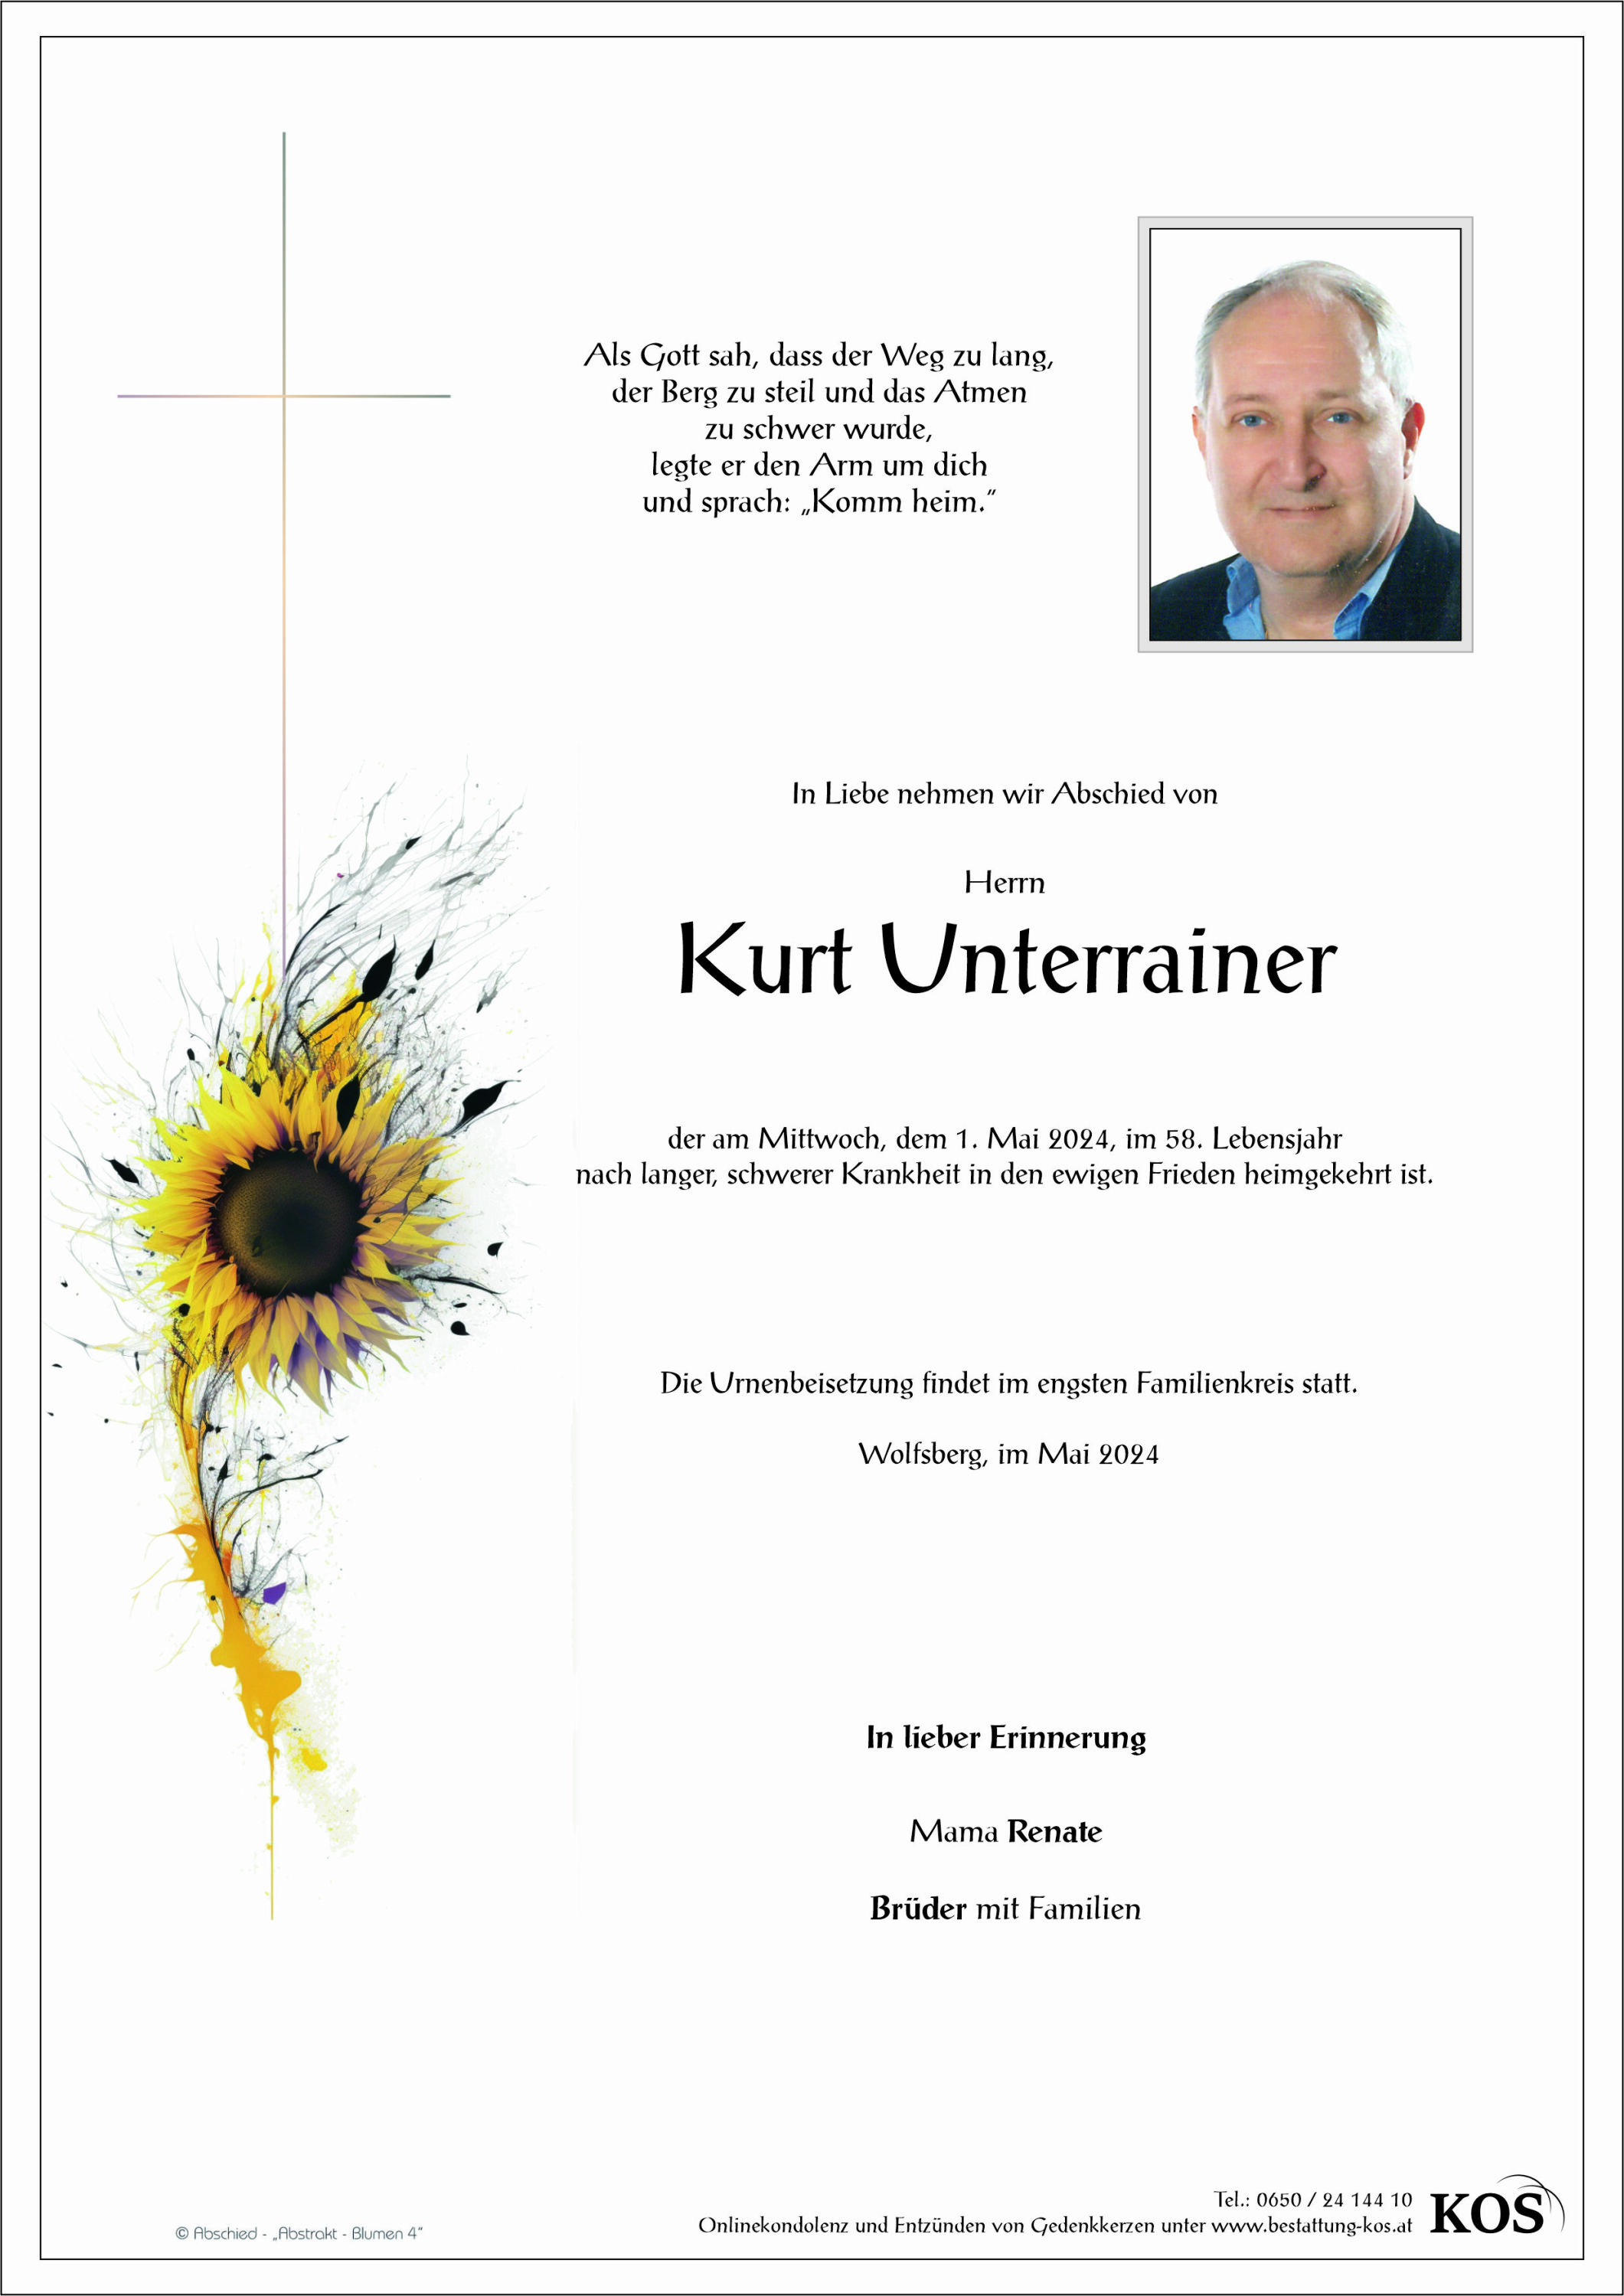 Kurt Unterrainer